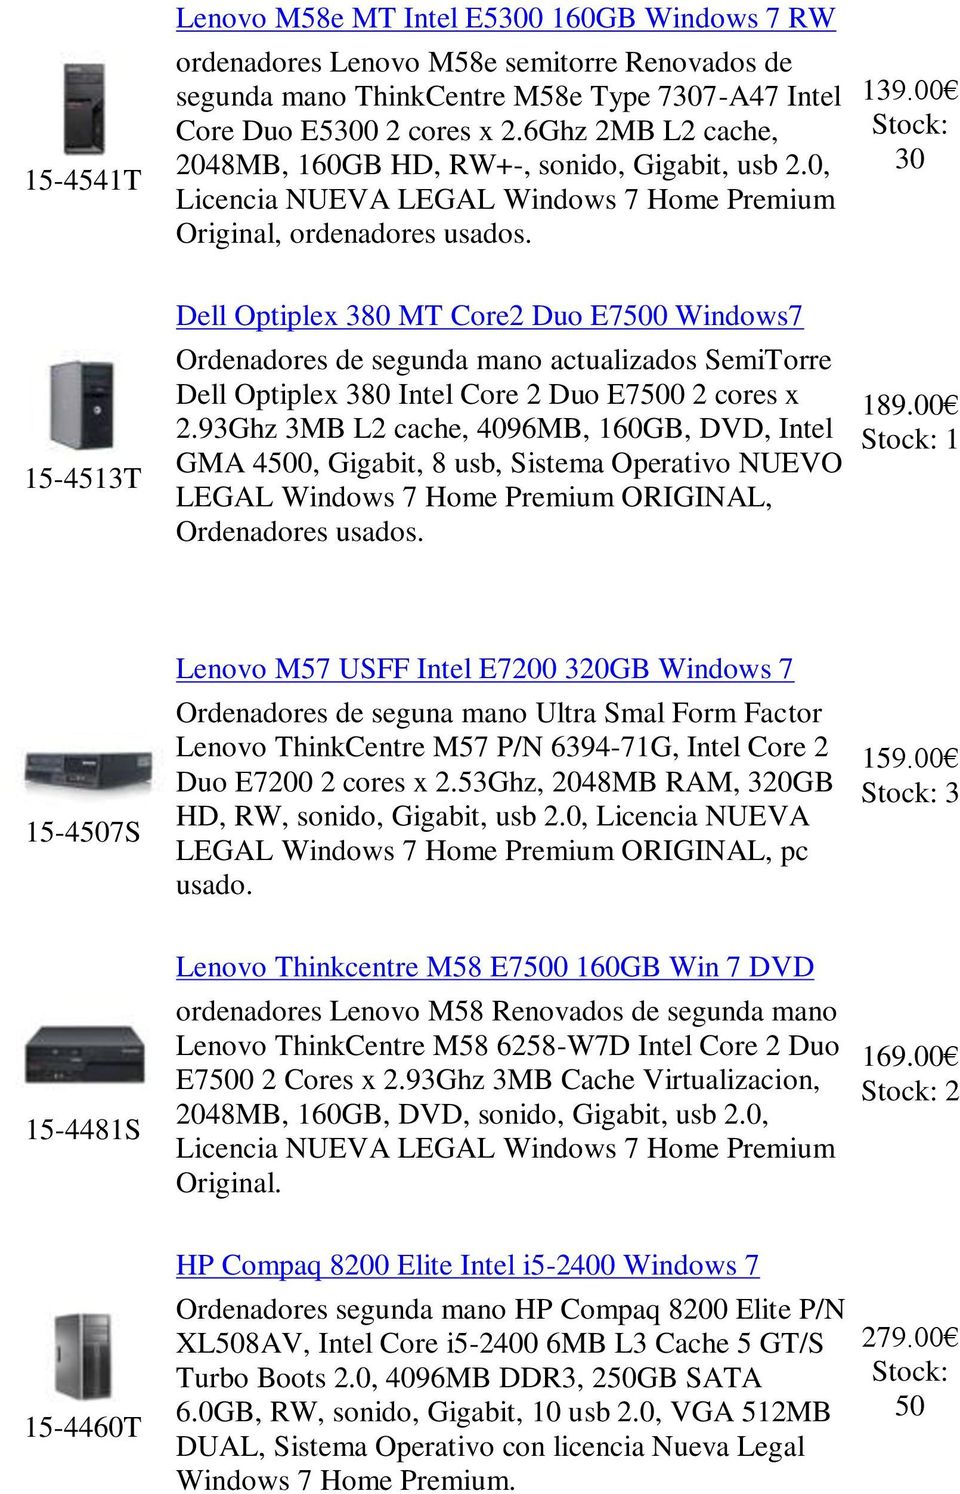 00 30 15-4513T Dell Optiplex 380 MT Core2 Duo E7500 Windows7 Ordenadores de segunda mano actualizados SemiTorre Dell Optiplex 380 Intel Core 2 Duo E7500 2 cores x 2.